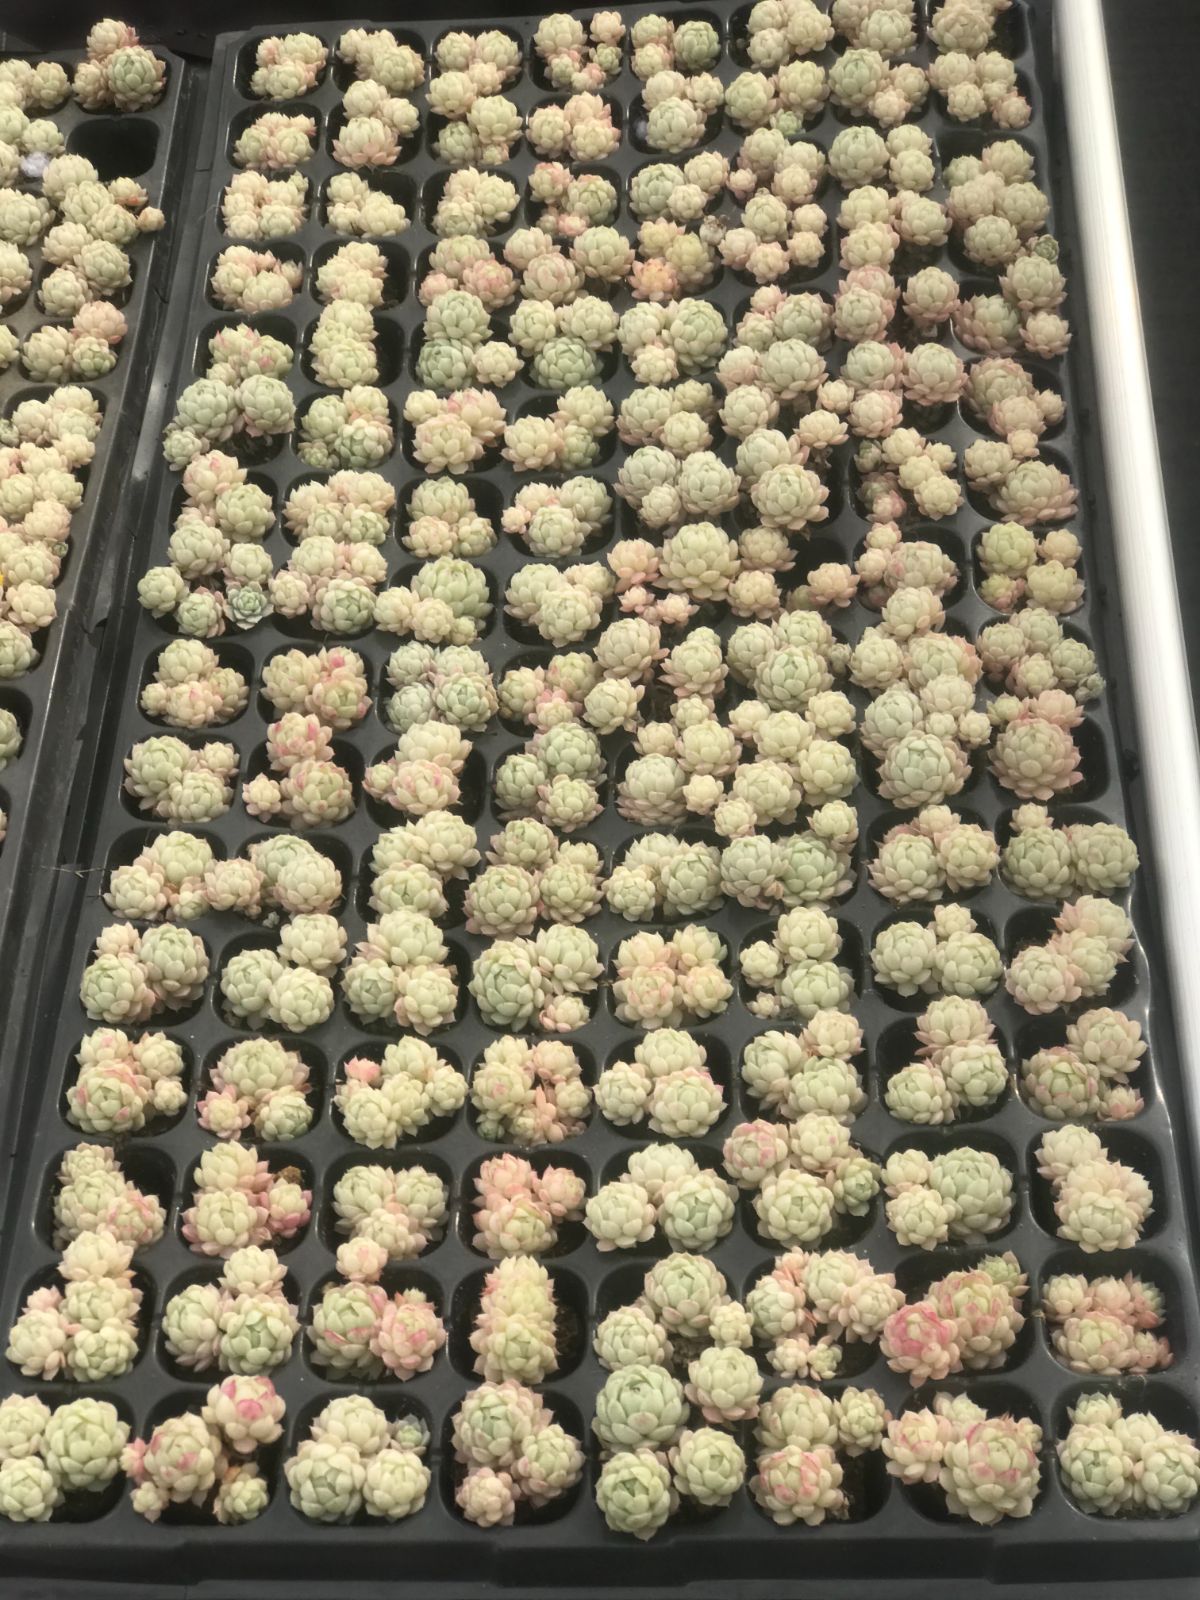 128株 R555-3 多肉植物 エケベリア ラノリン球 超美苗 サボテン 観葉